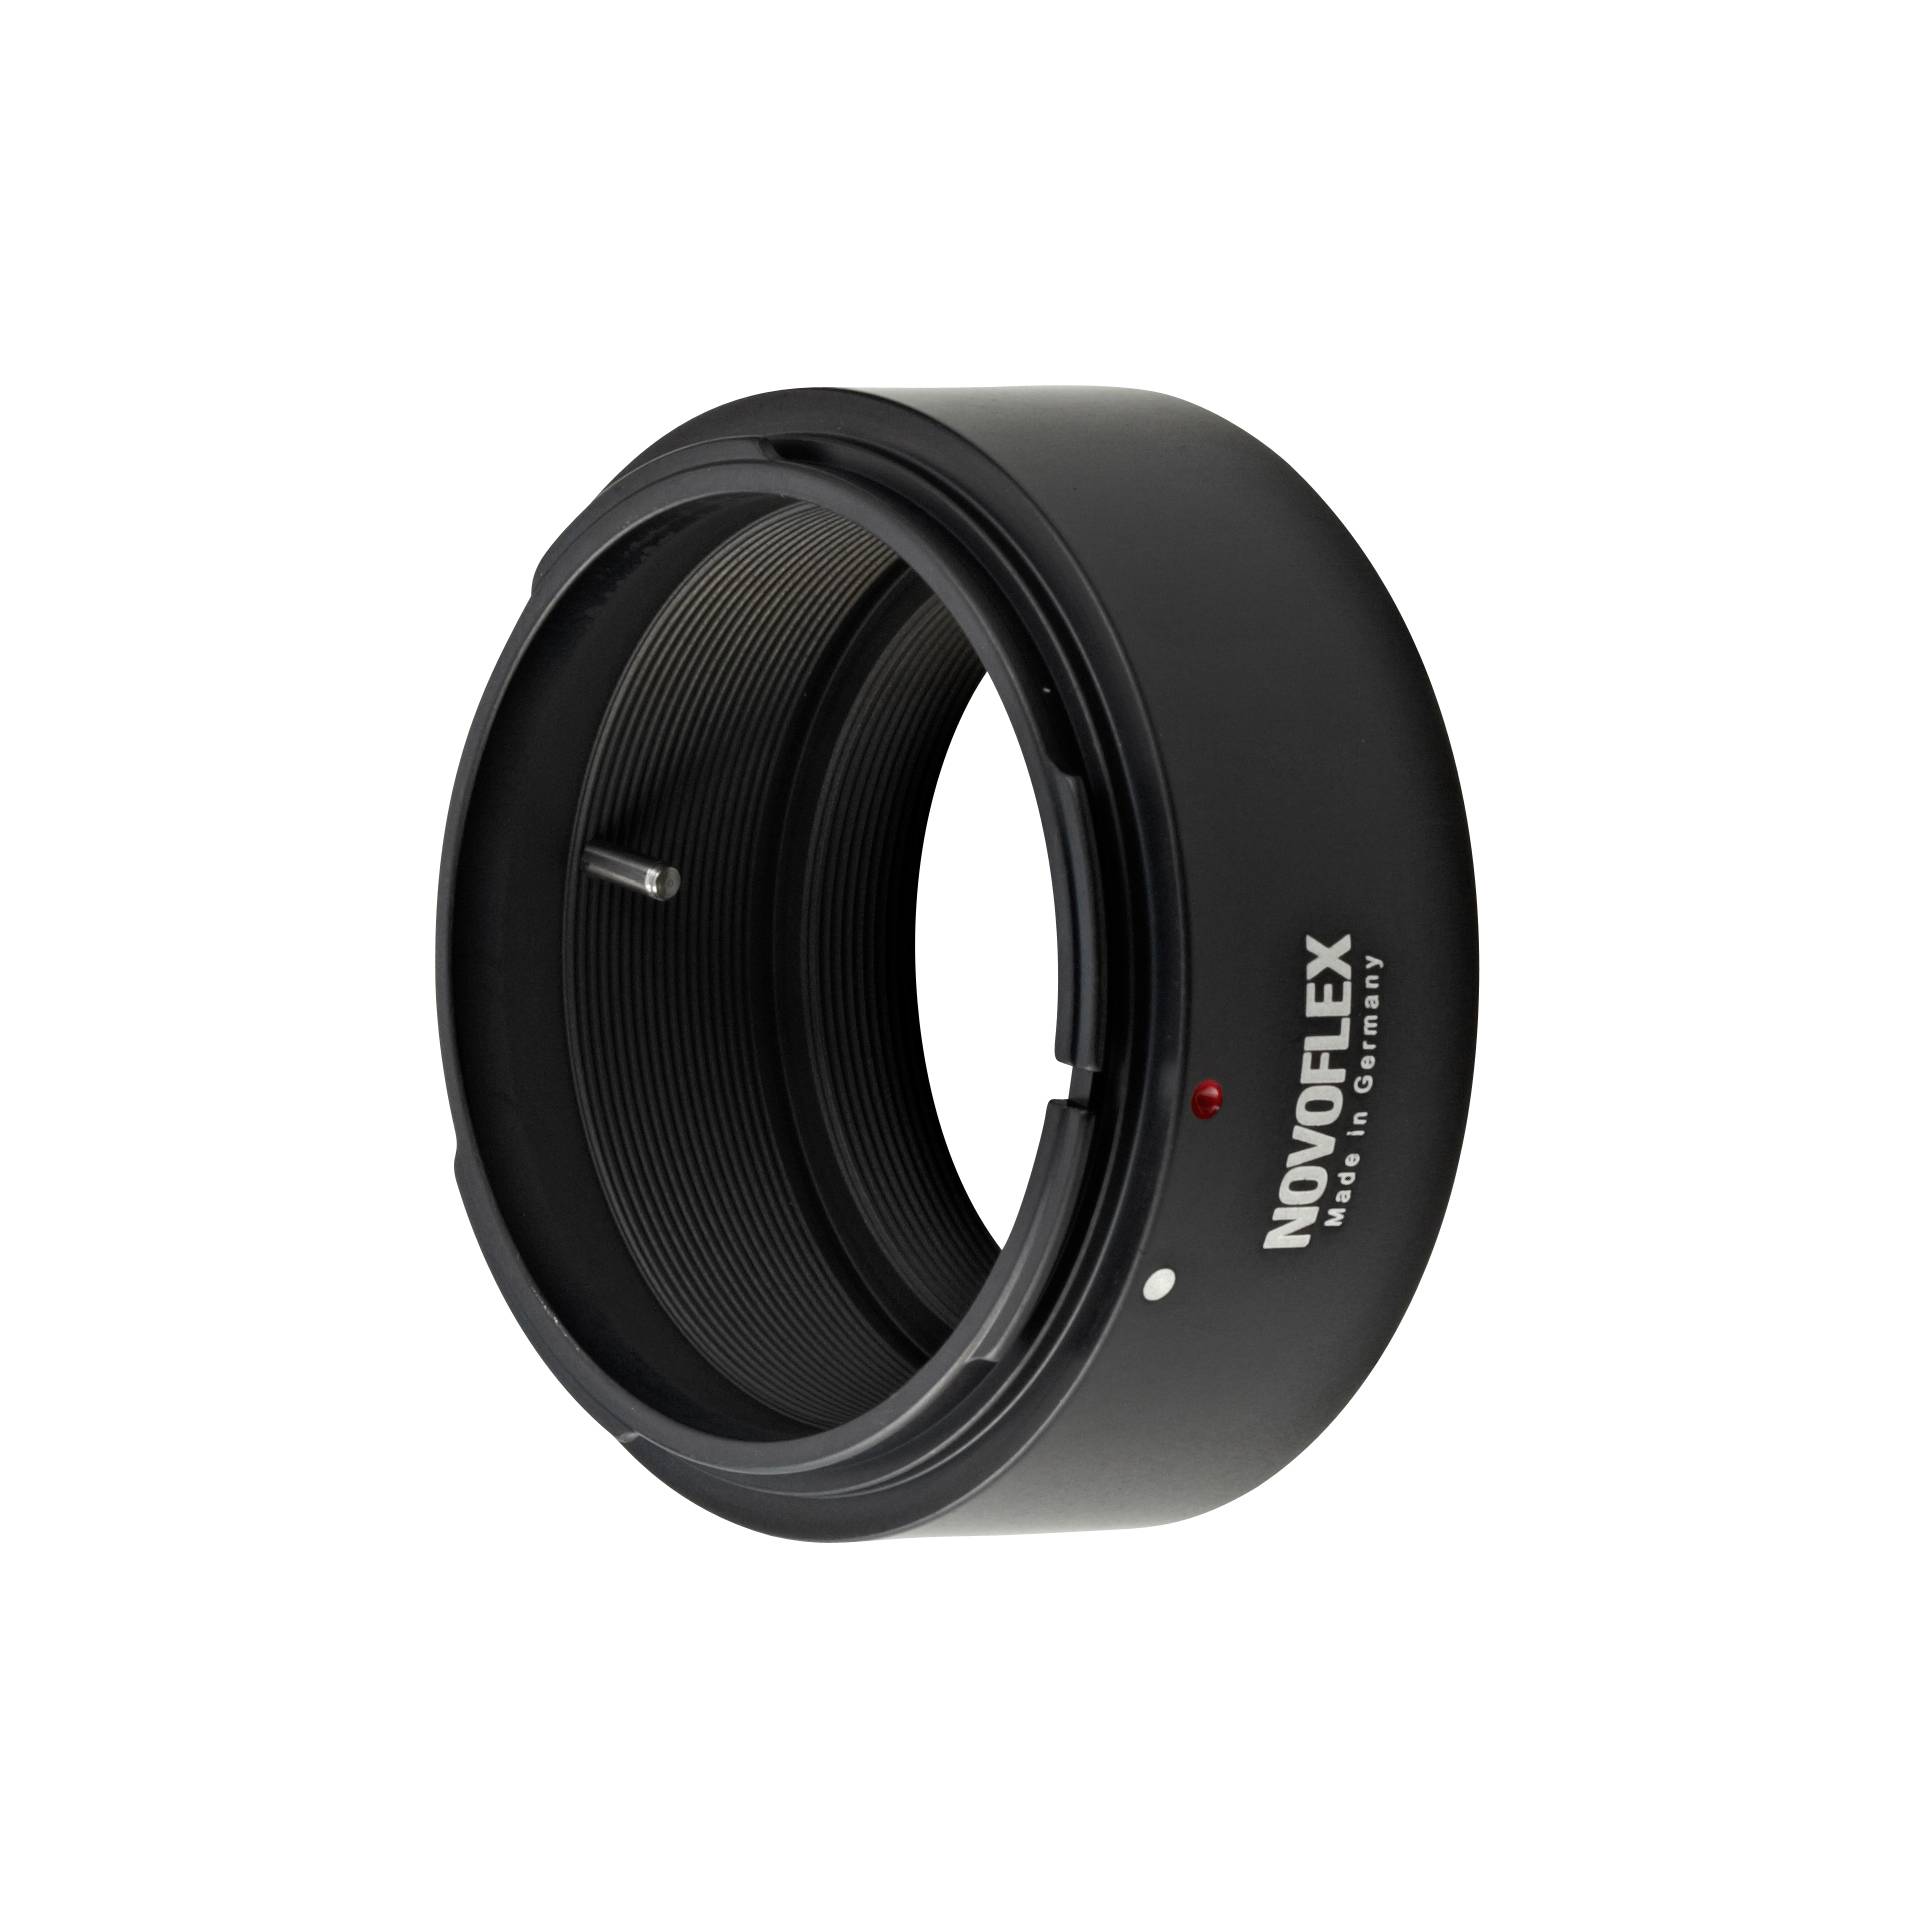 Novoflex adattatore Canon FD obiettivo a Sony E Mount camera